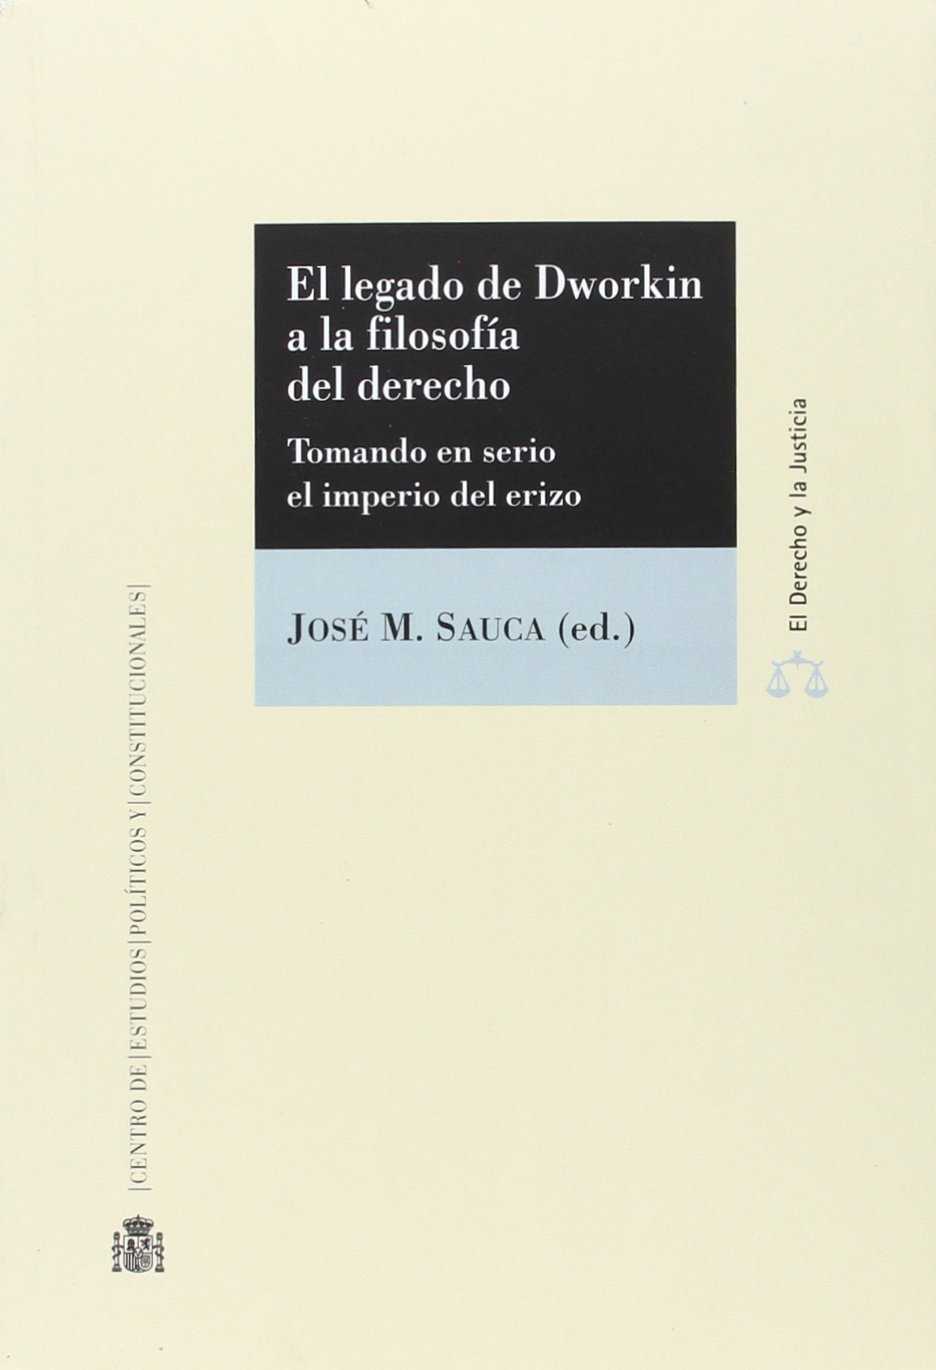 Imagen de portada del libro La filosofía del derecho de Ronald Dworkin